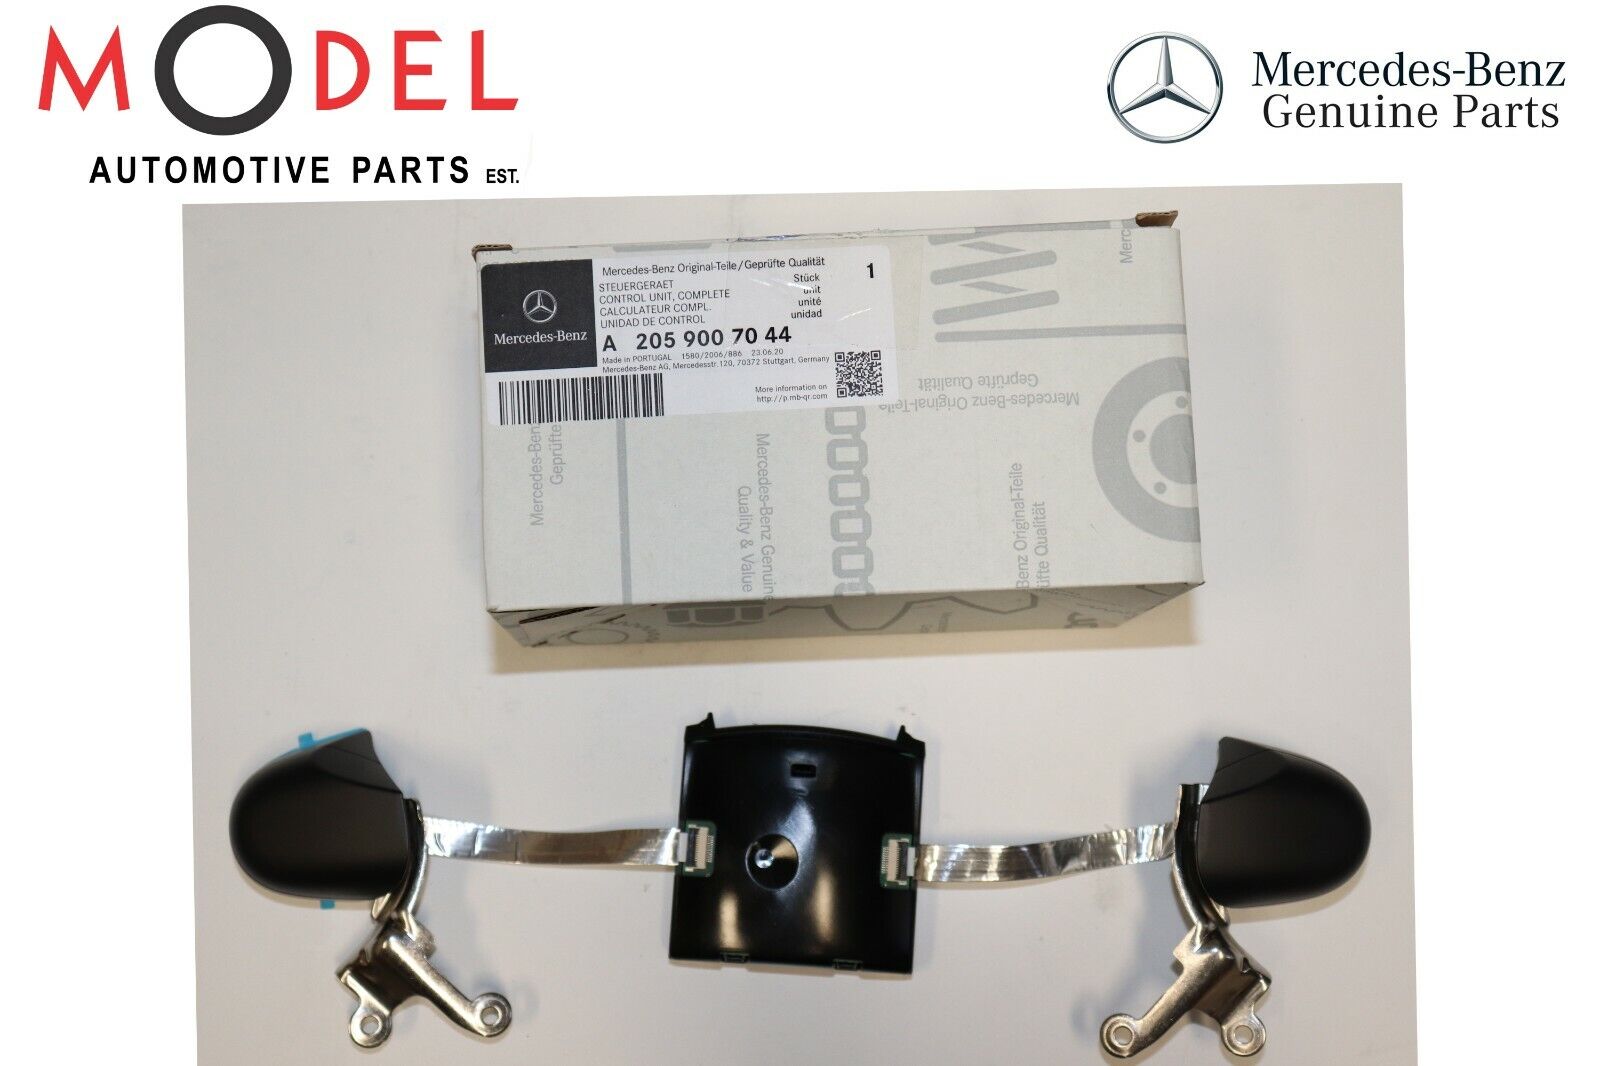 Mercedes-Benz Genuine Steering Rocker Switch 2059007044